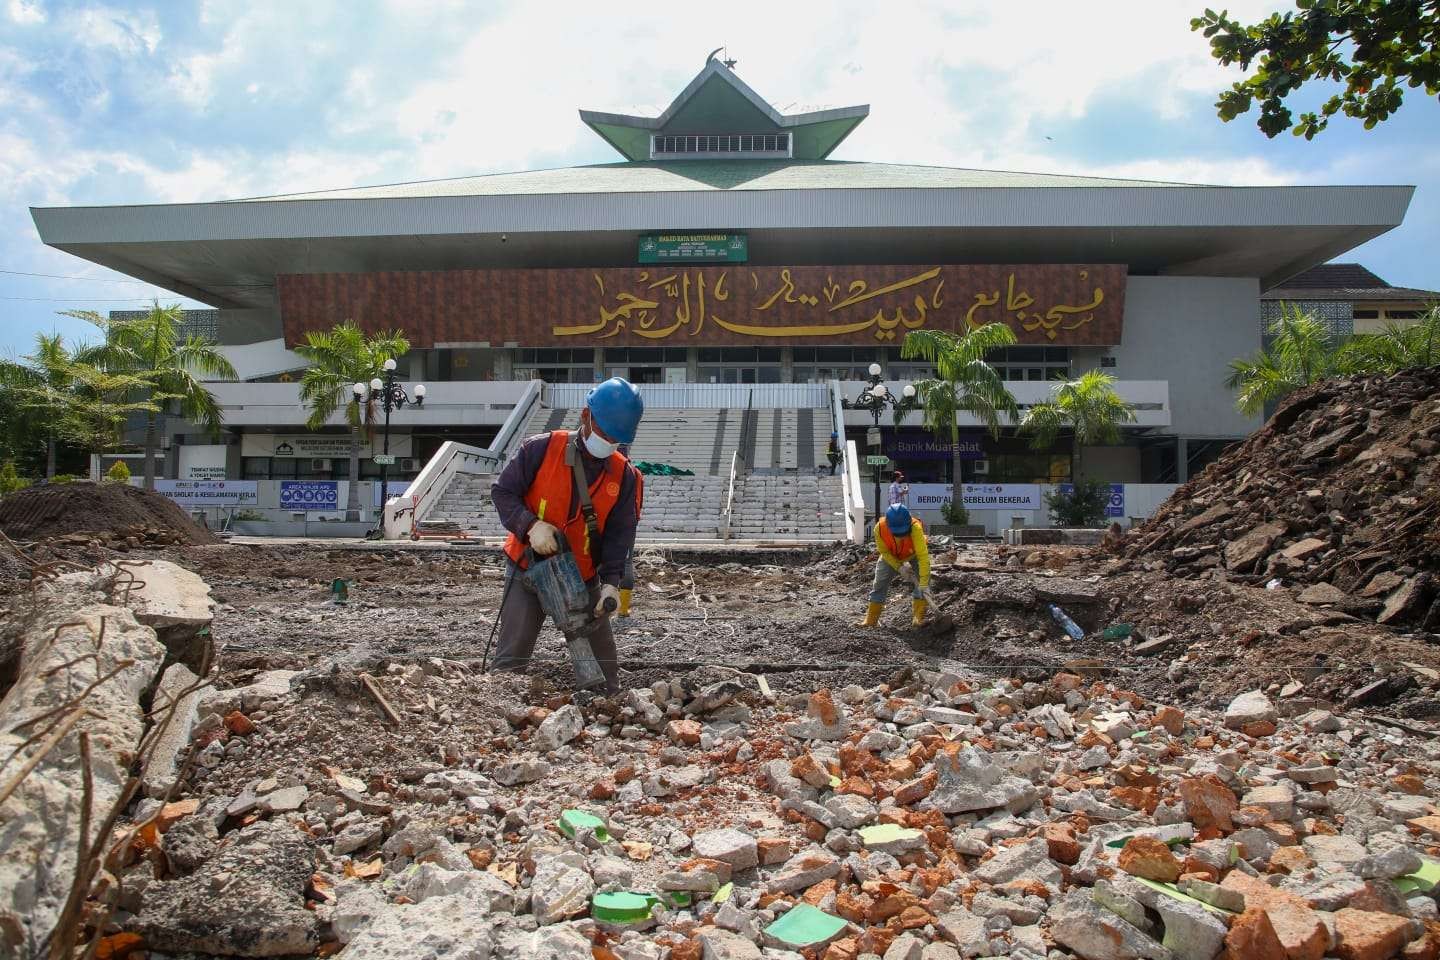 Gubernur Jawa Tengah Ganjar Pranowo mengusulkan agar gerbang masjid dibongkar sebab menutup kemegahan masjid. (Foto: Ist)